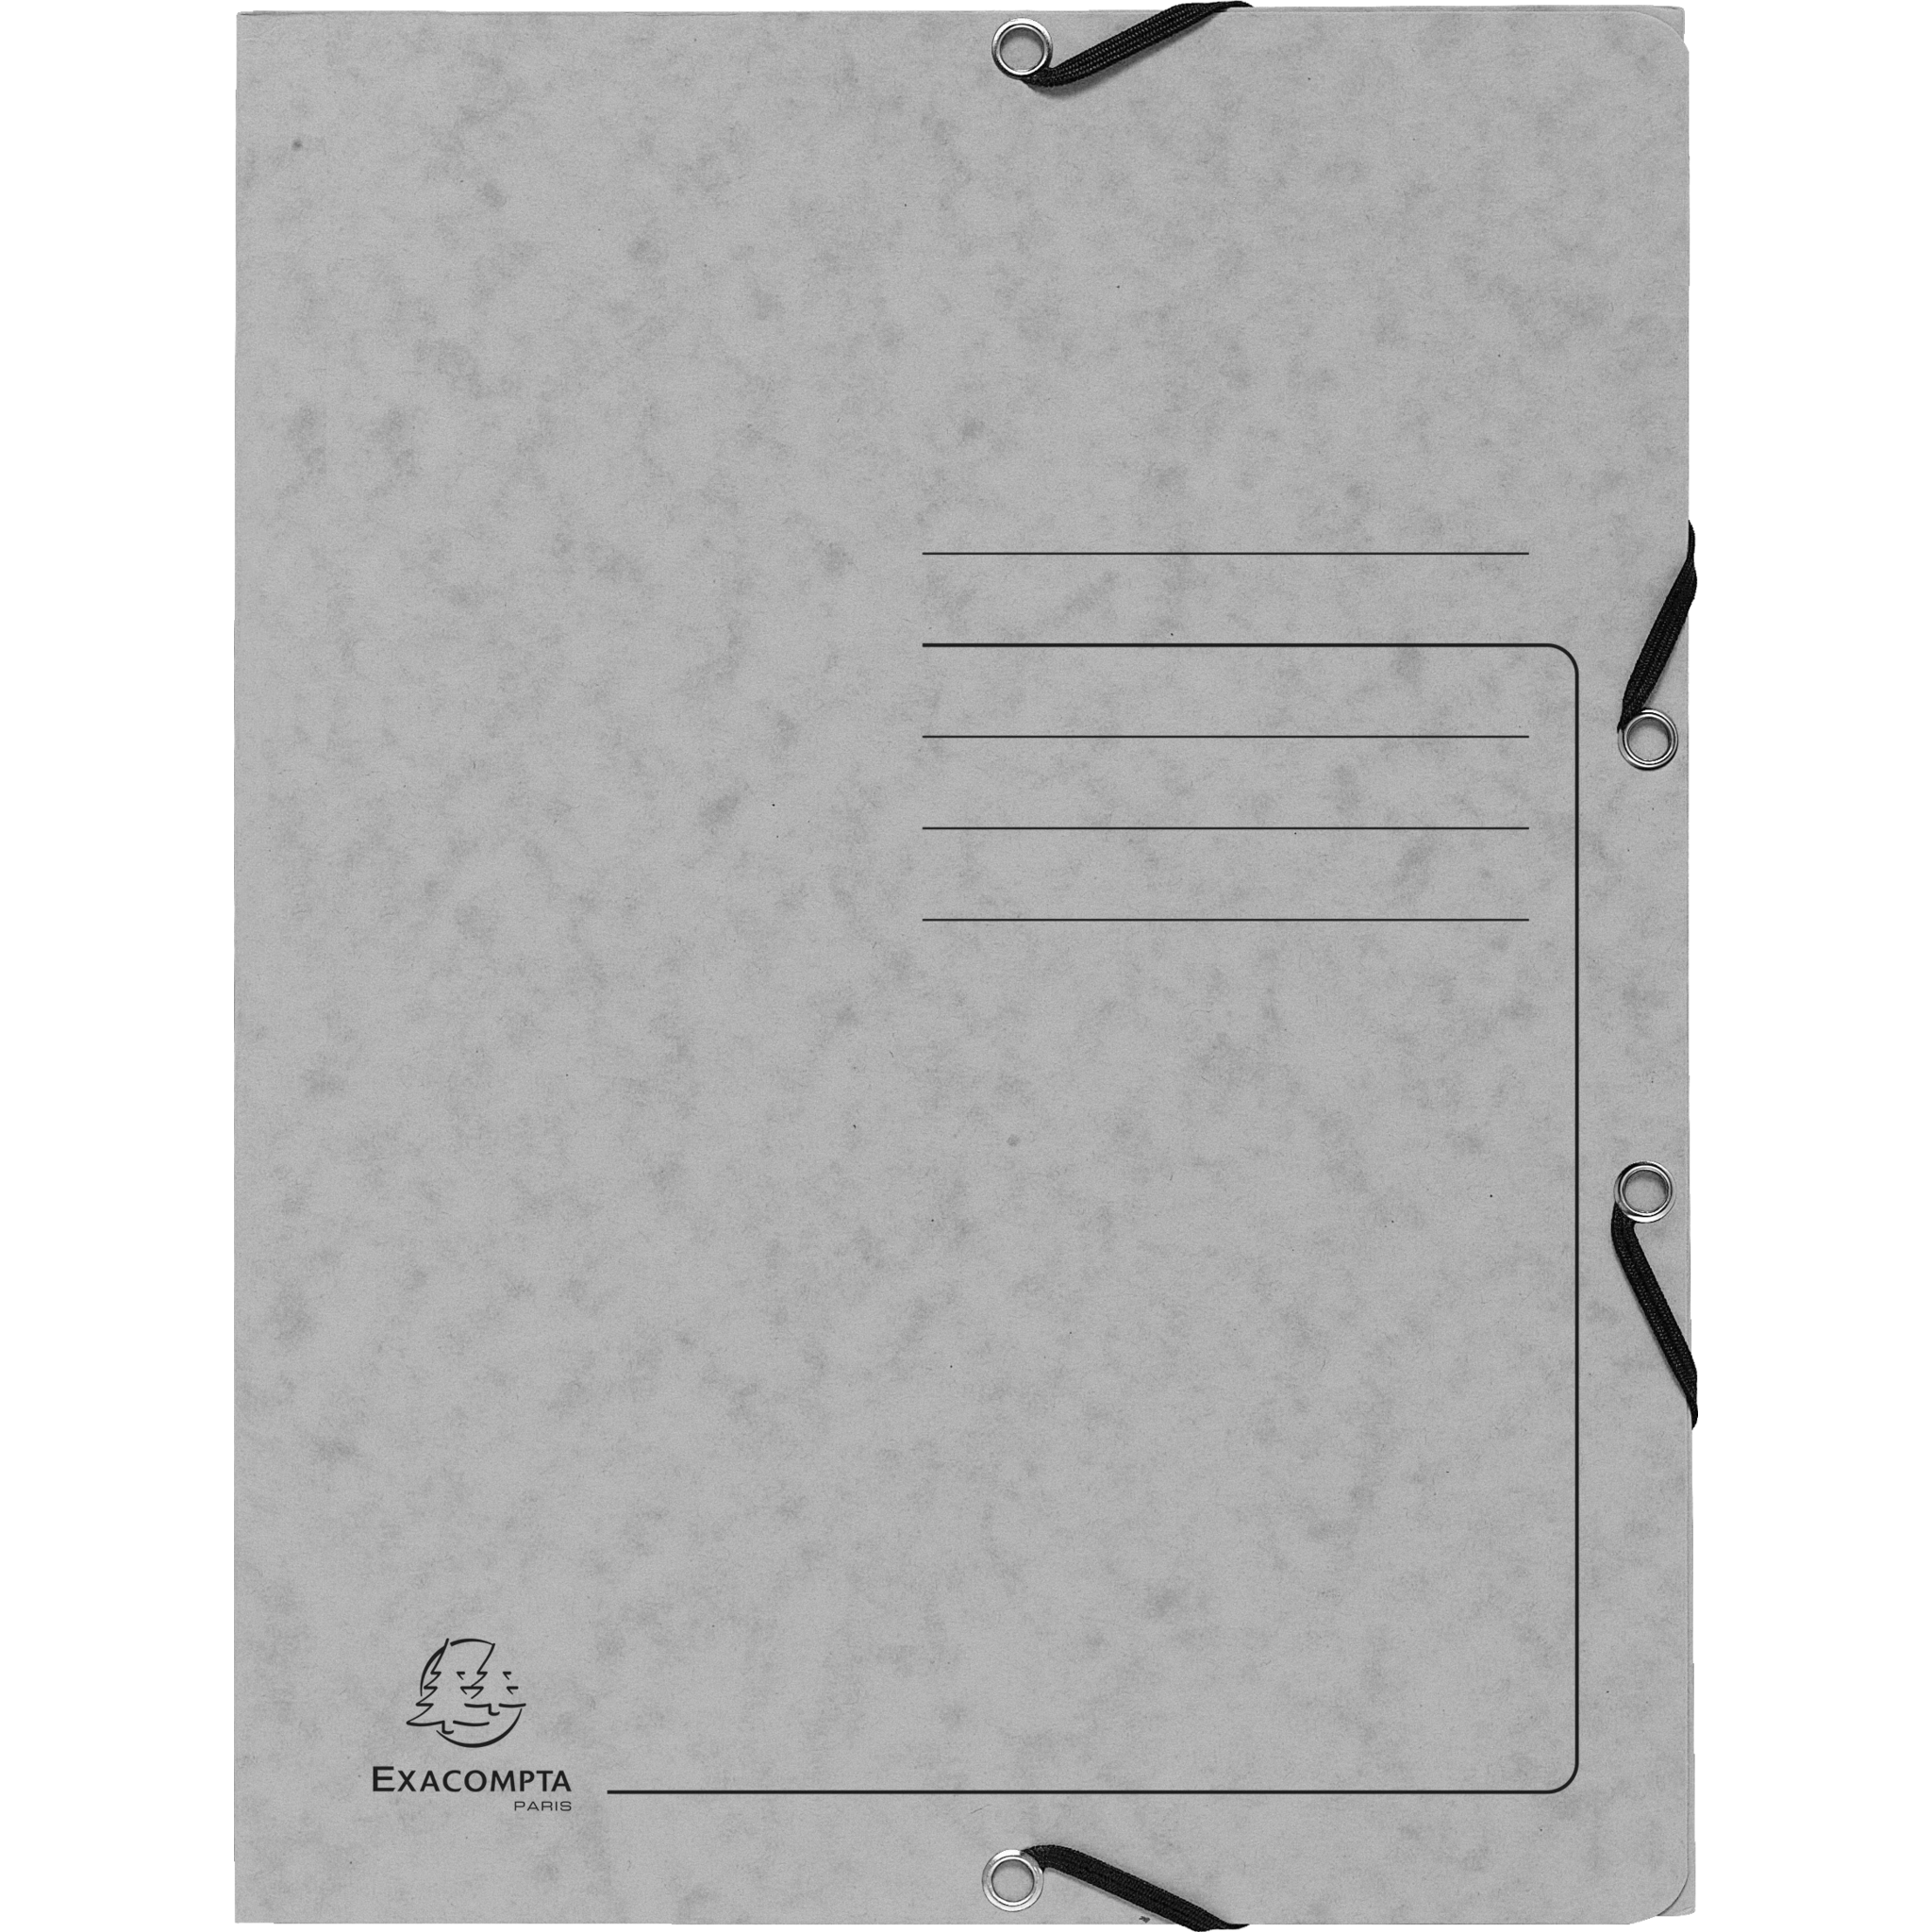 EXACOMPTA Sammelmappe mit Gummizug und 3 Klappen aus Colorspan-Karton 355g/m2 - A4 - Grau